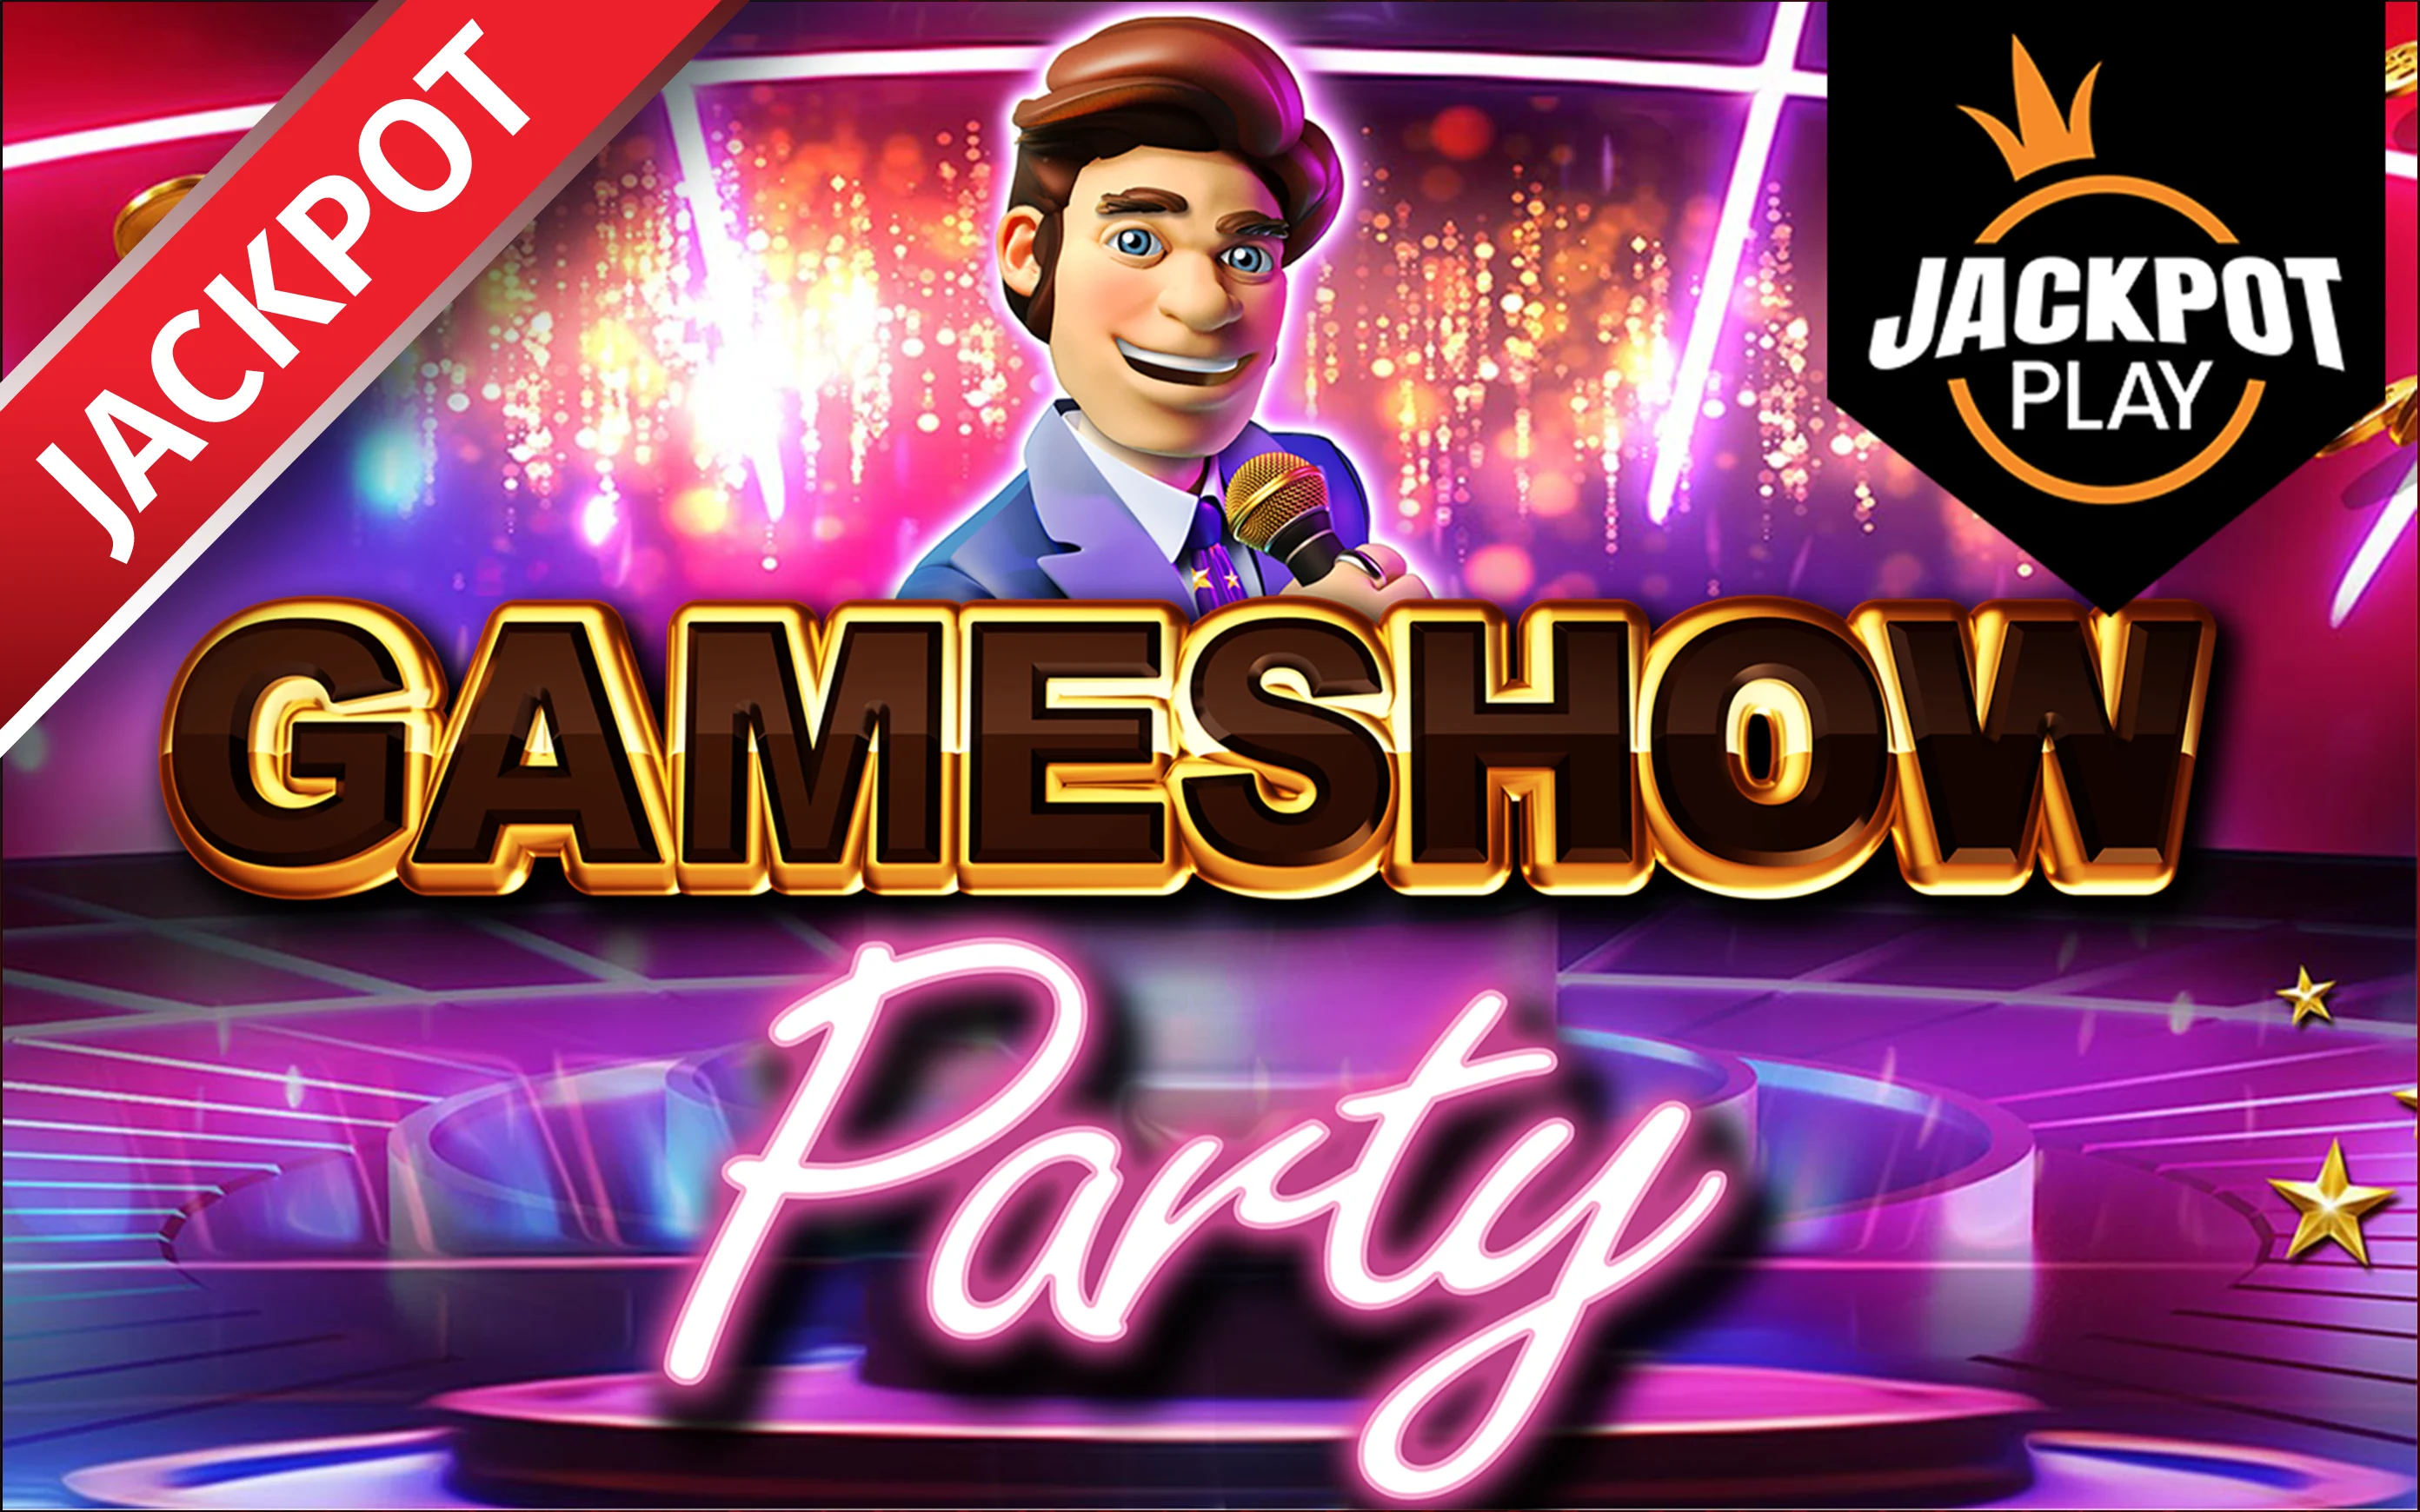 Spielen Sie Gameshow Party Jackpot Play auf Starcasino.be-Online-Casino